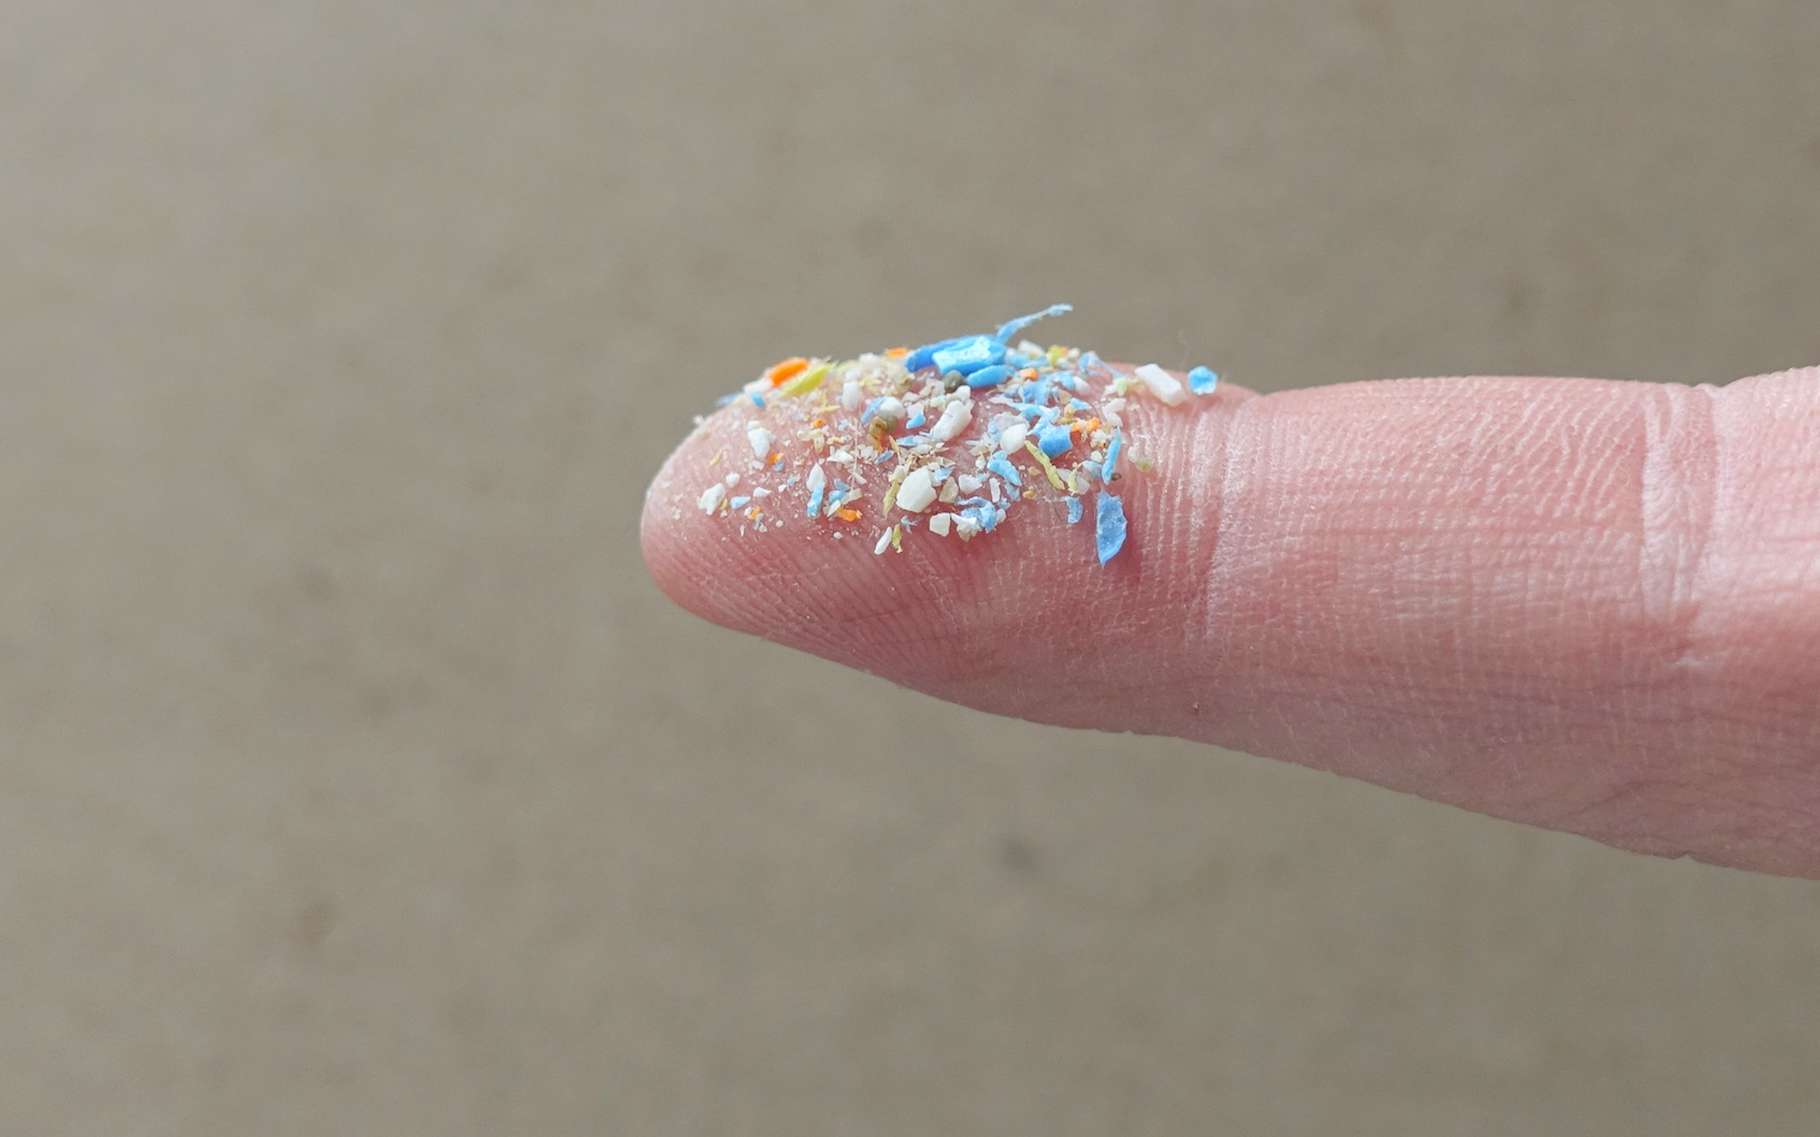 24.000 milliards de morceaux de microplastiques dans les océans et ce n’est pas fini